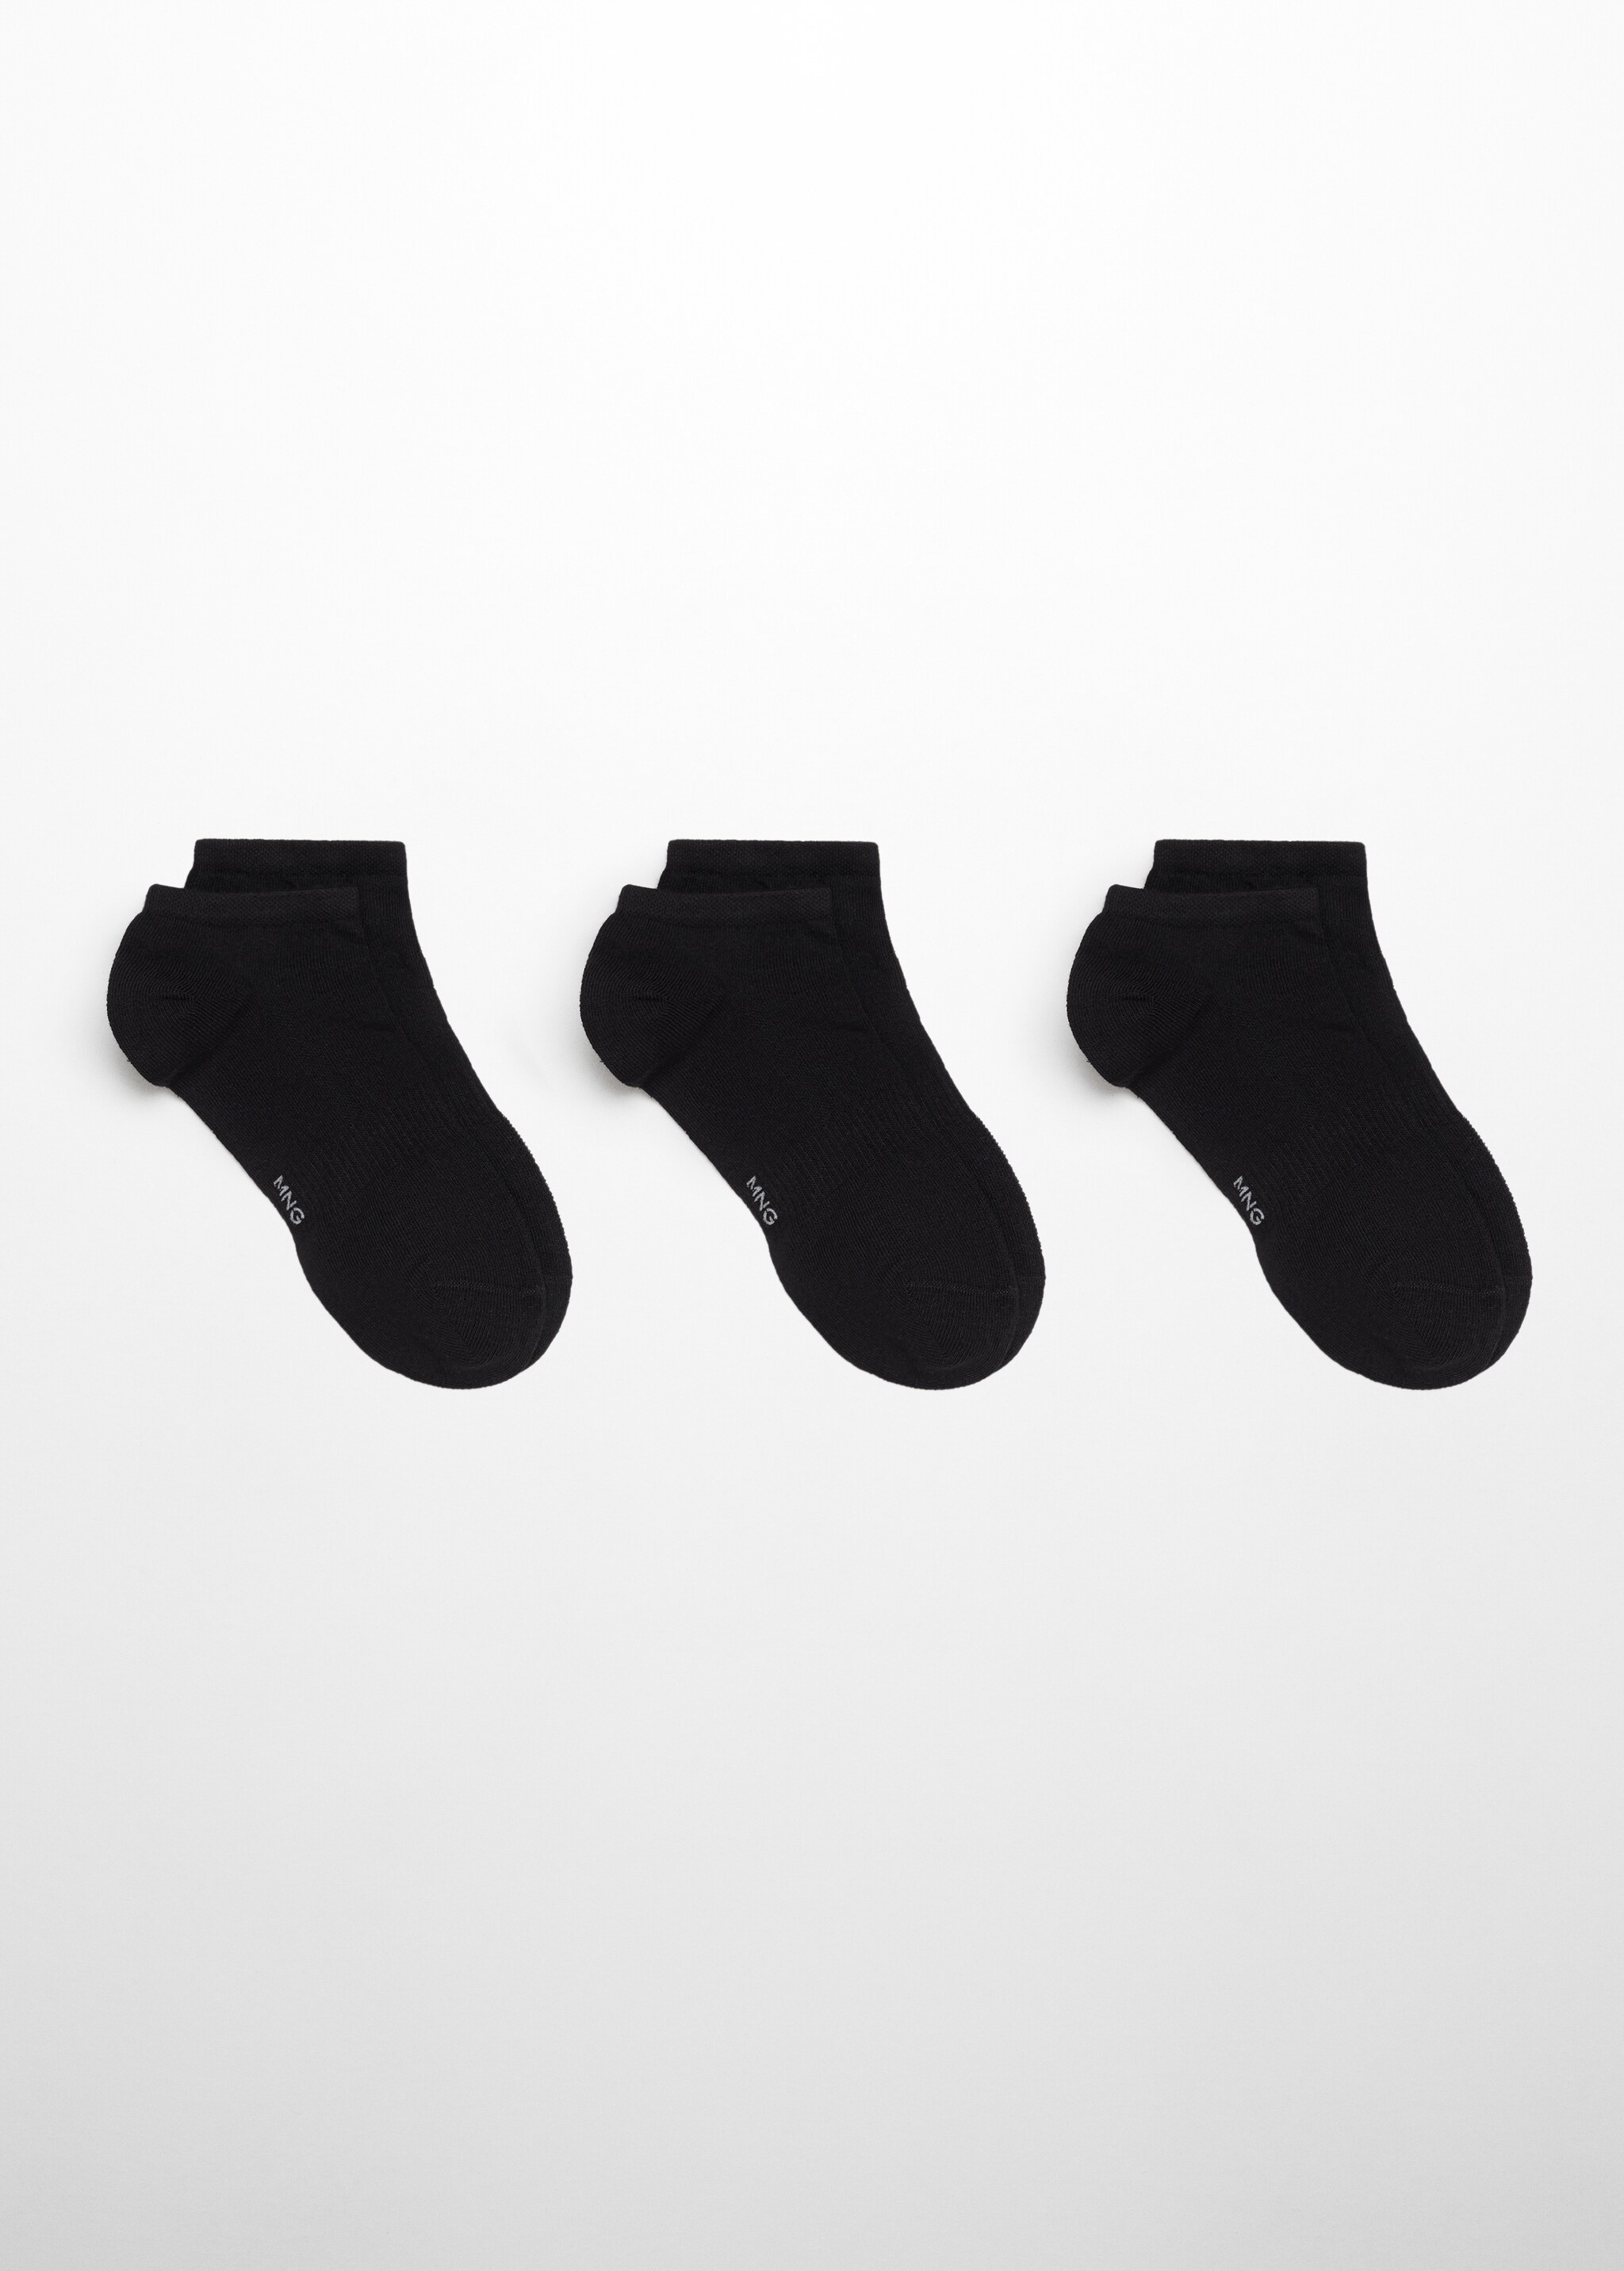 3 пары однотонных носков из хлопка - Изделие без модели